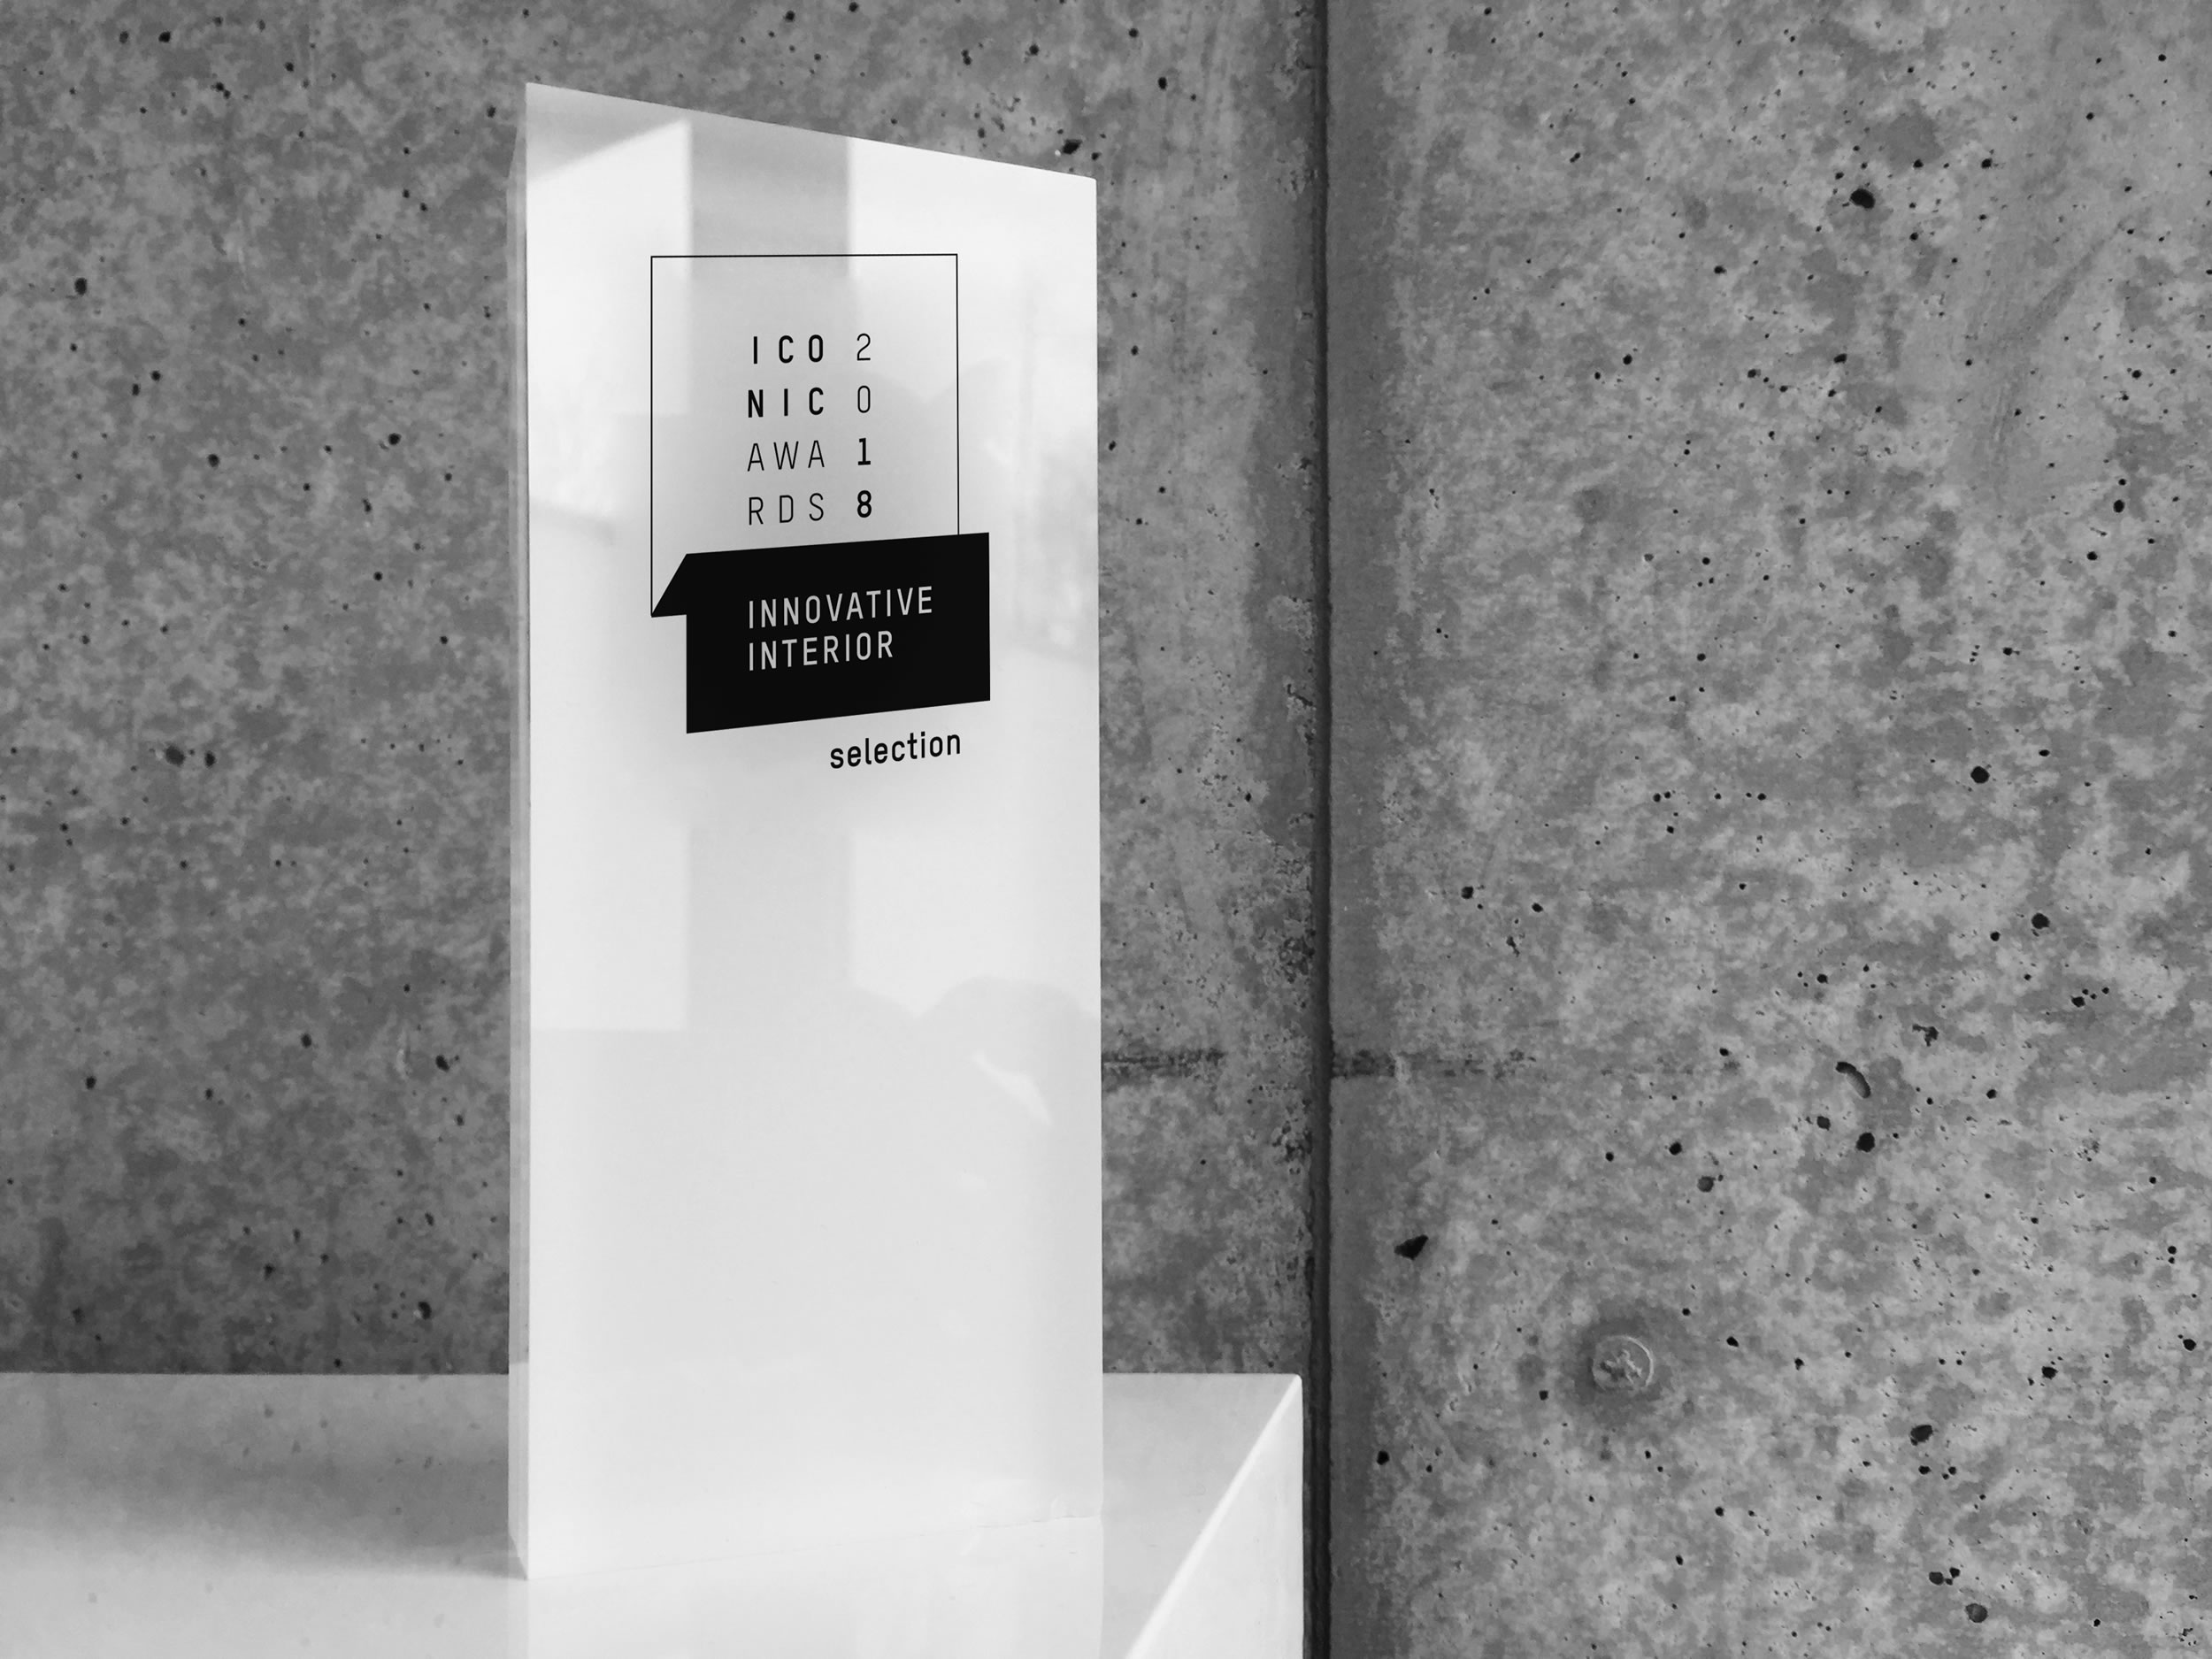 RECHTECK Award Winning Designer Iconic Award 2018 Schreibtisch